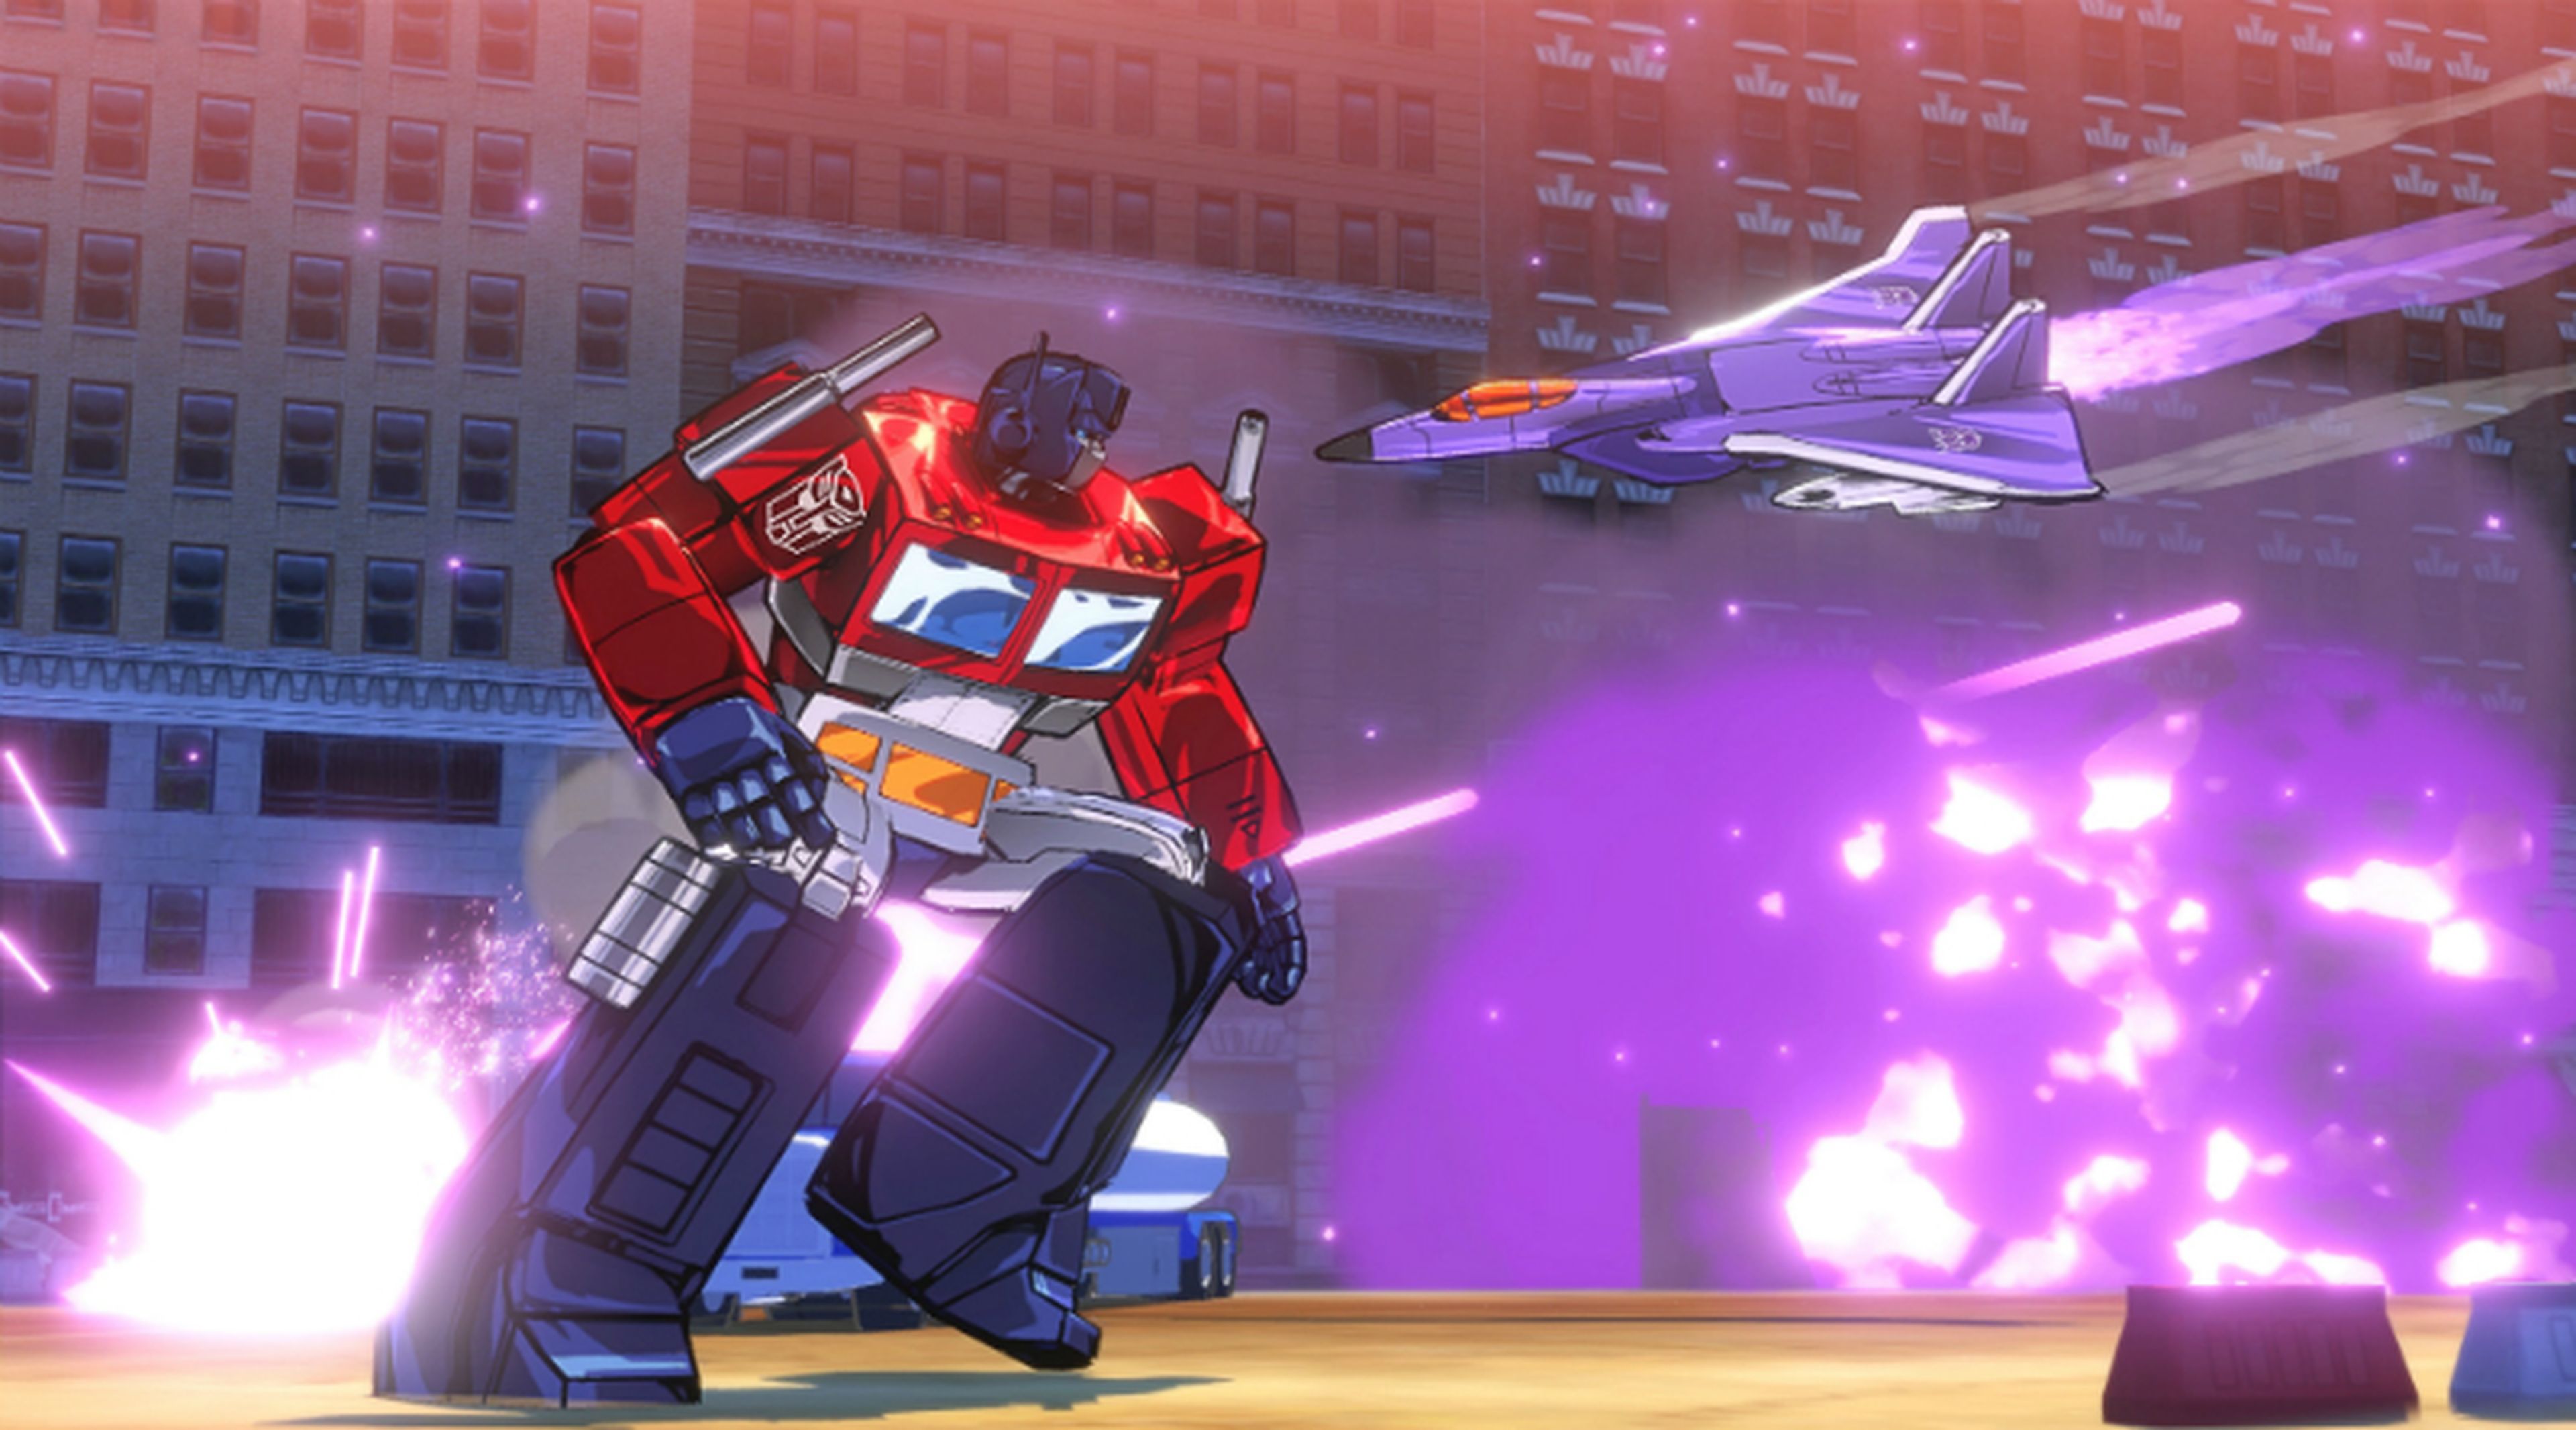 Transformers Devastation correrá a 1080p y 60 fps en PS4 y Xbox One